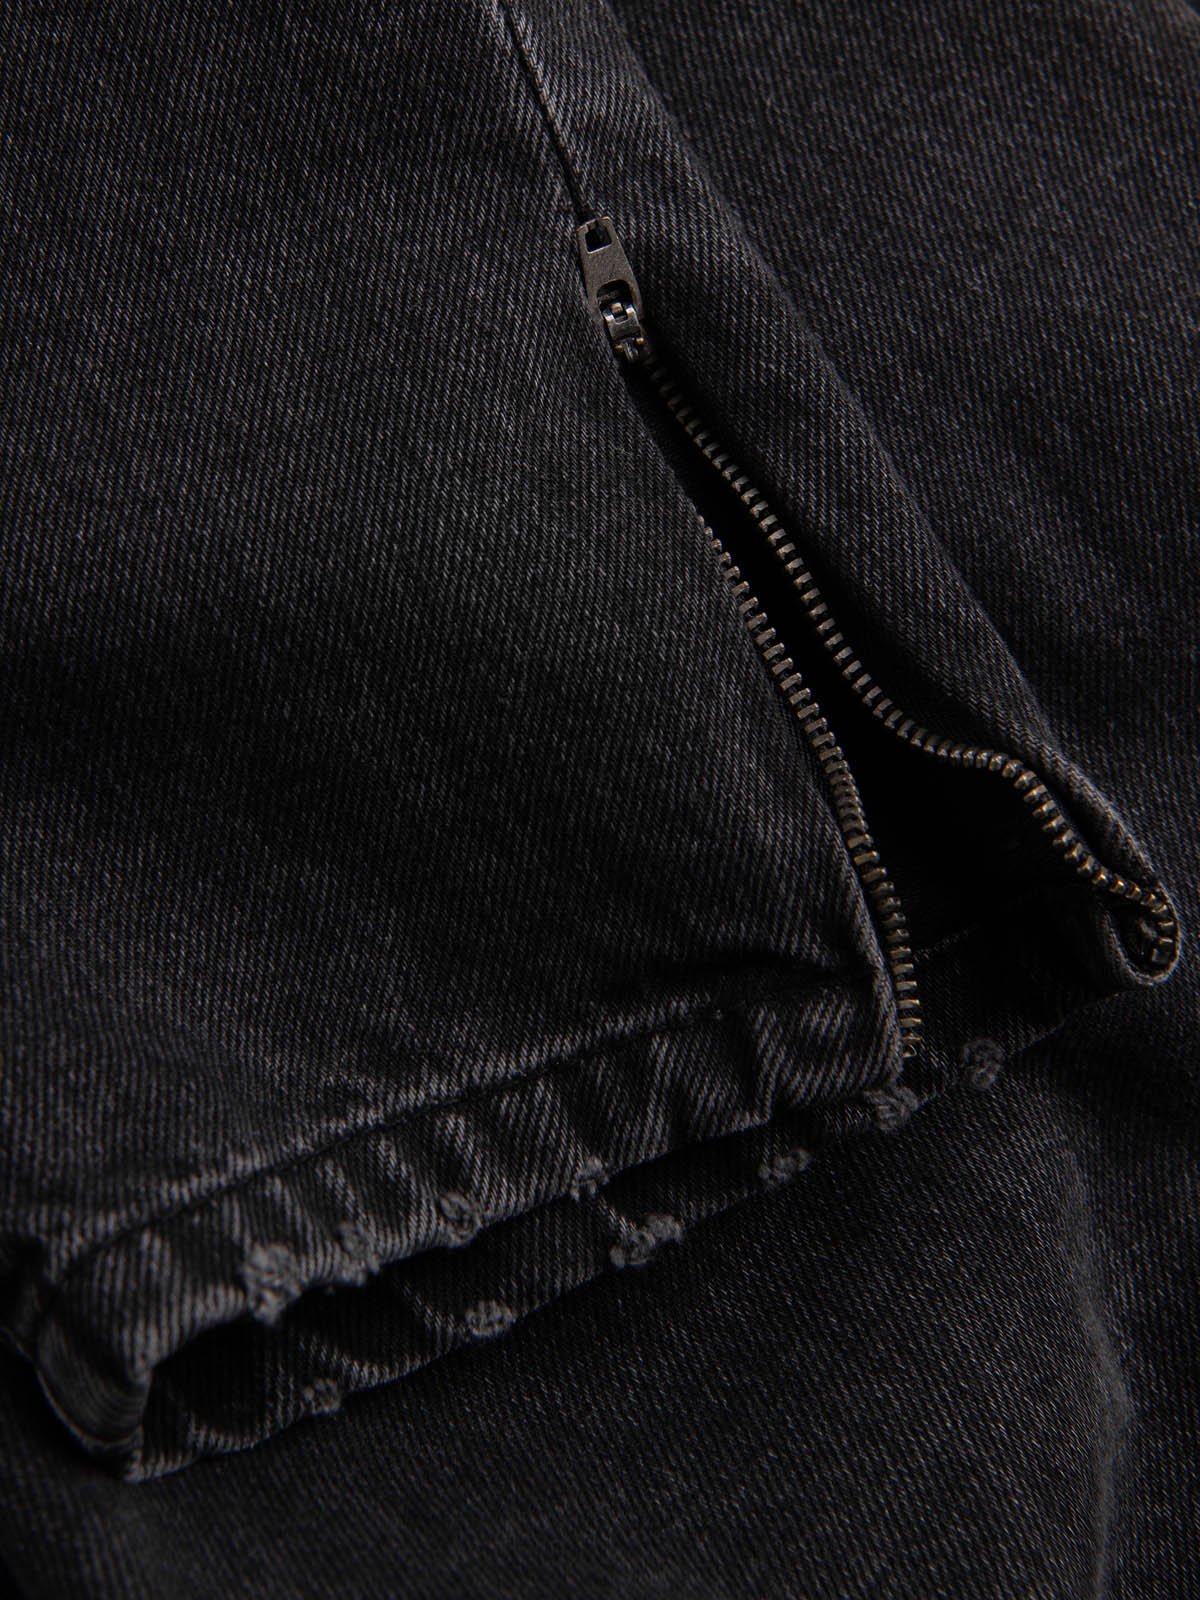 Men's jeans - black P1028 | Ombre.com - Men's clothing online